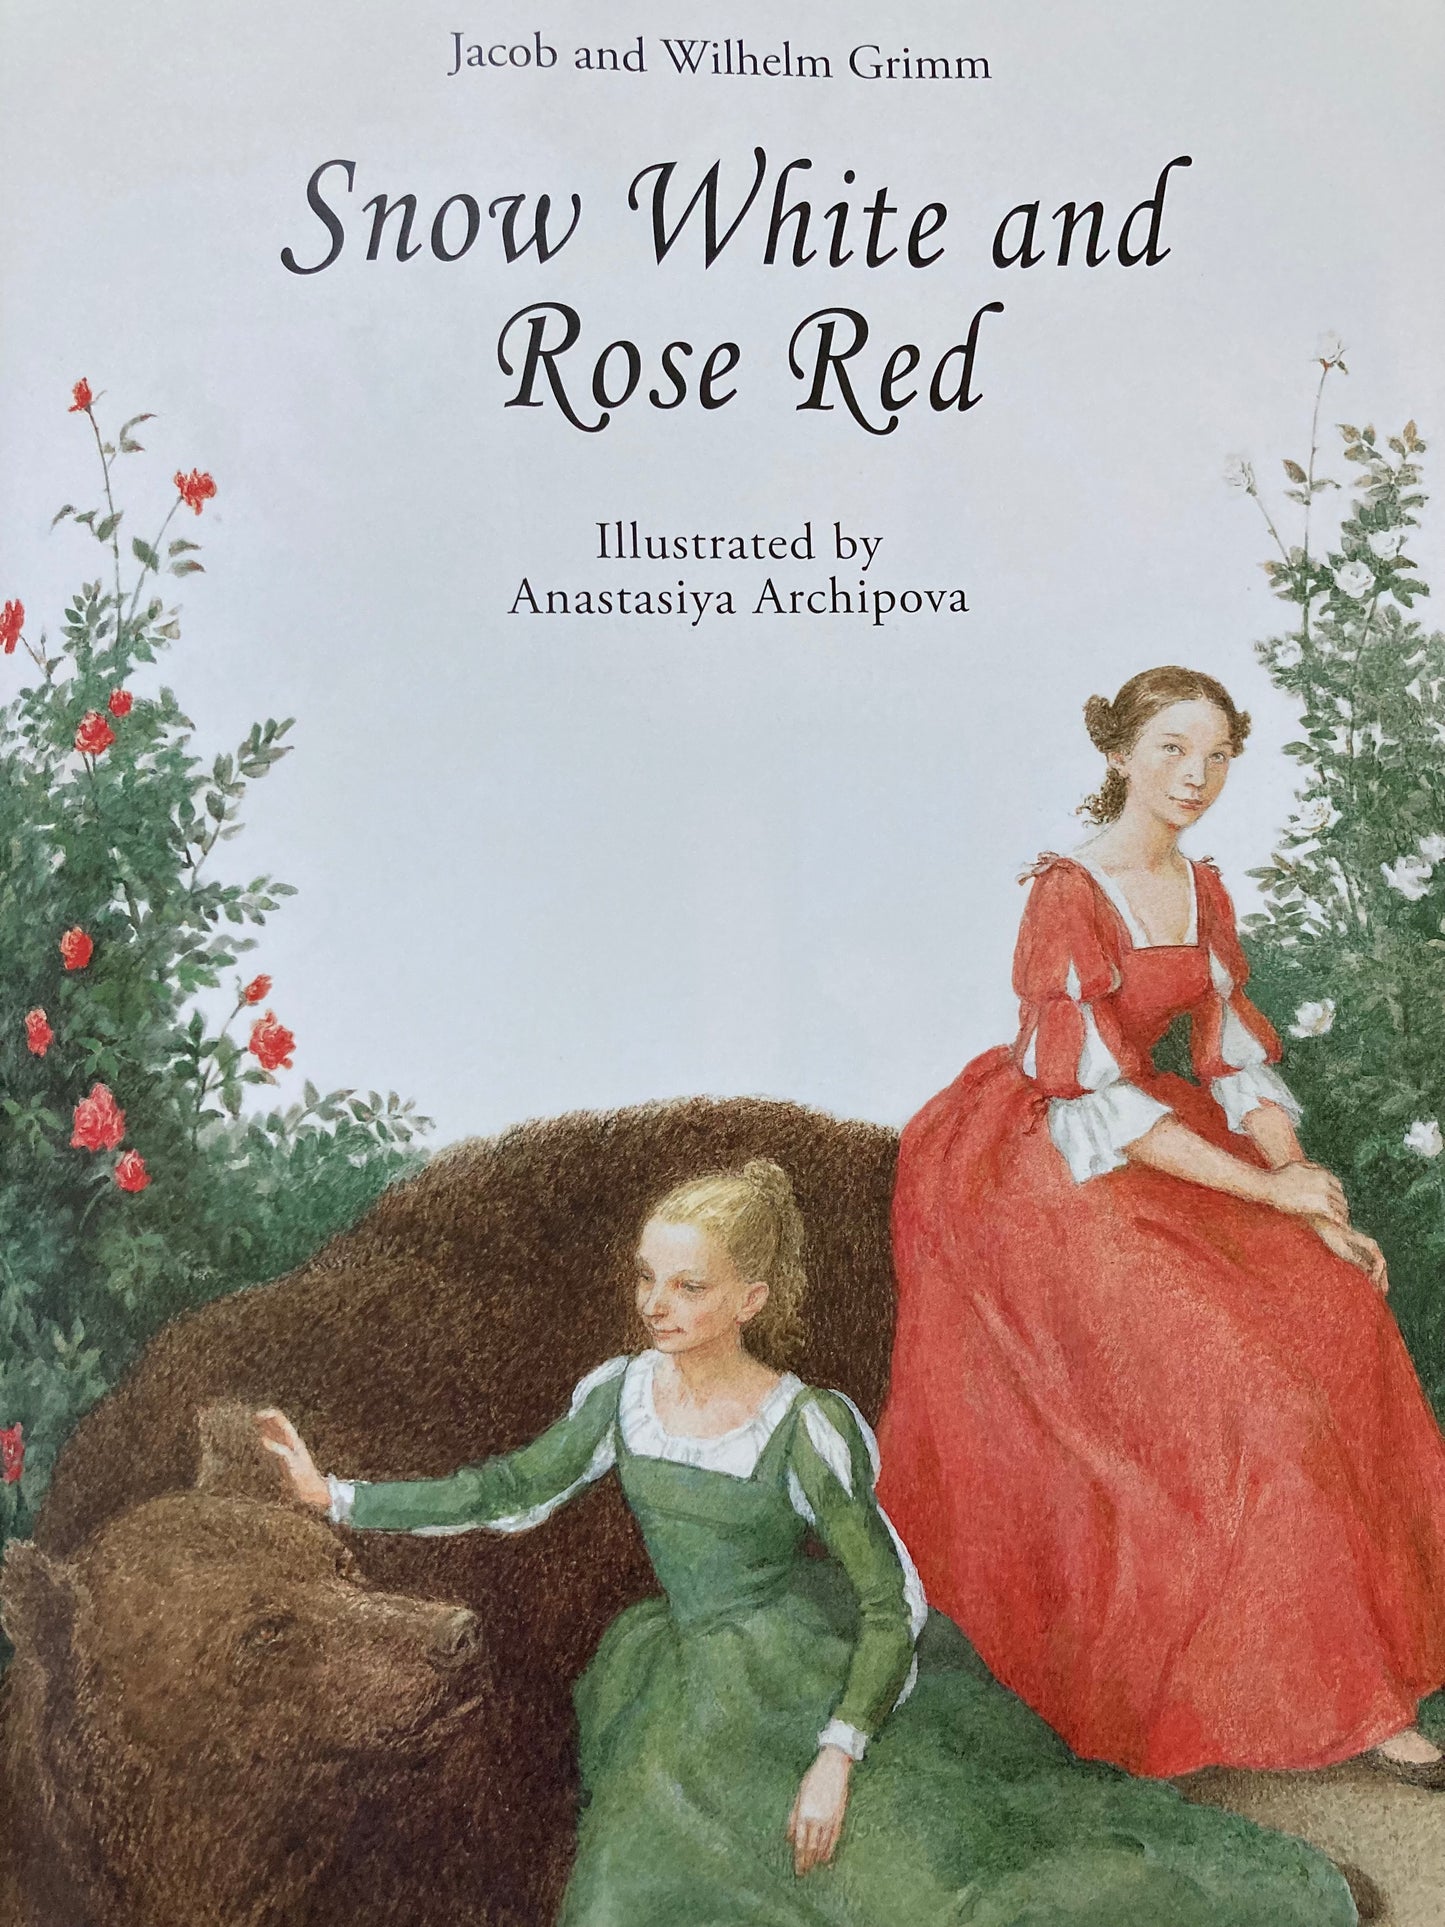 Livre de conte de fées pour enfants - BLANCHE NEIGE ET ROSE ROUGE